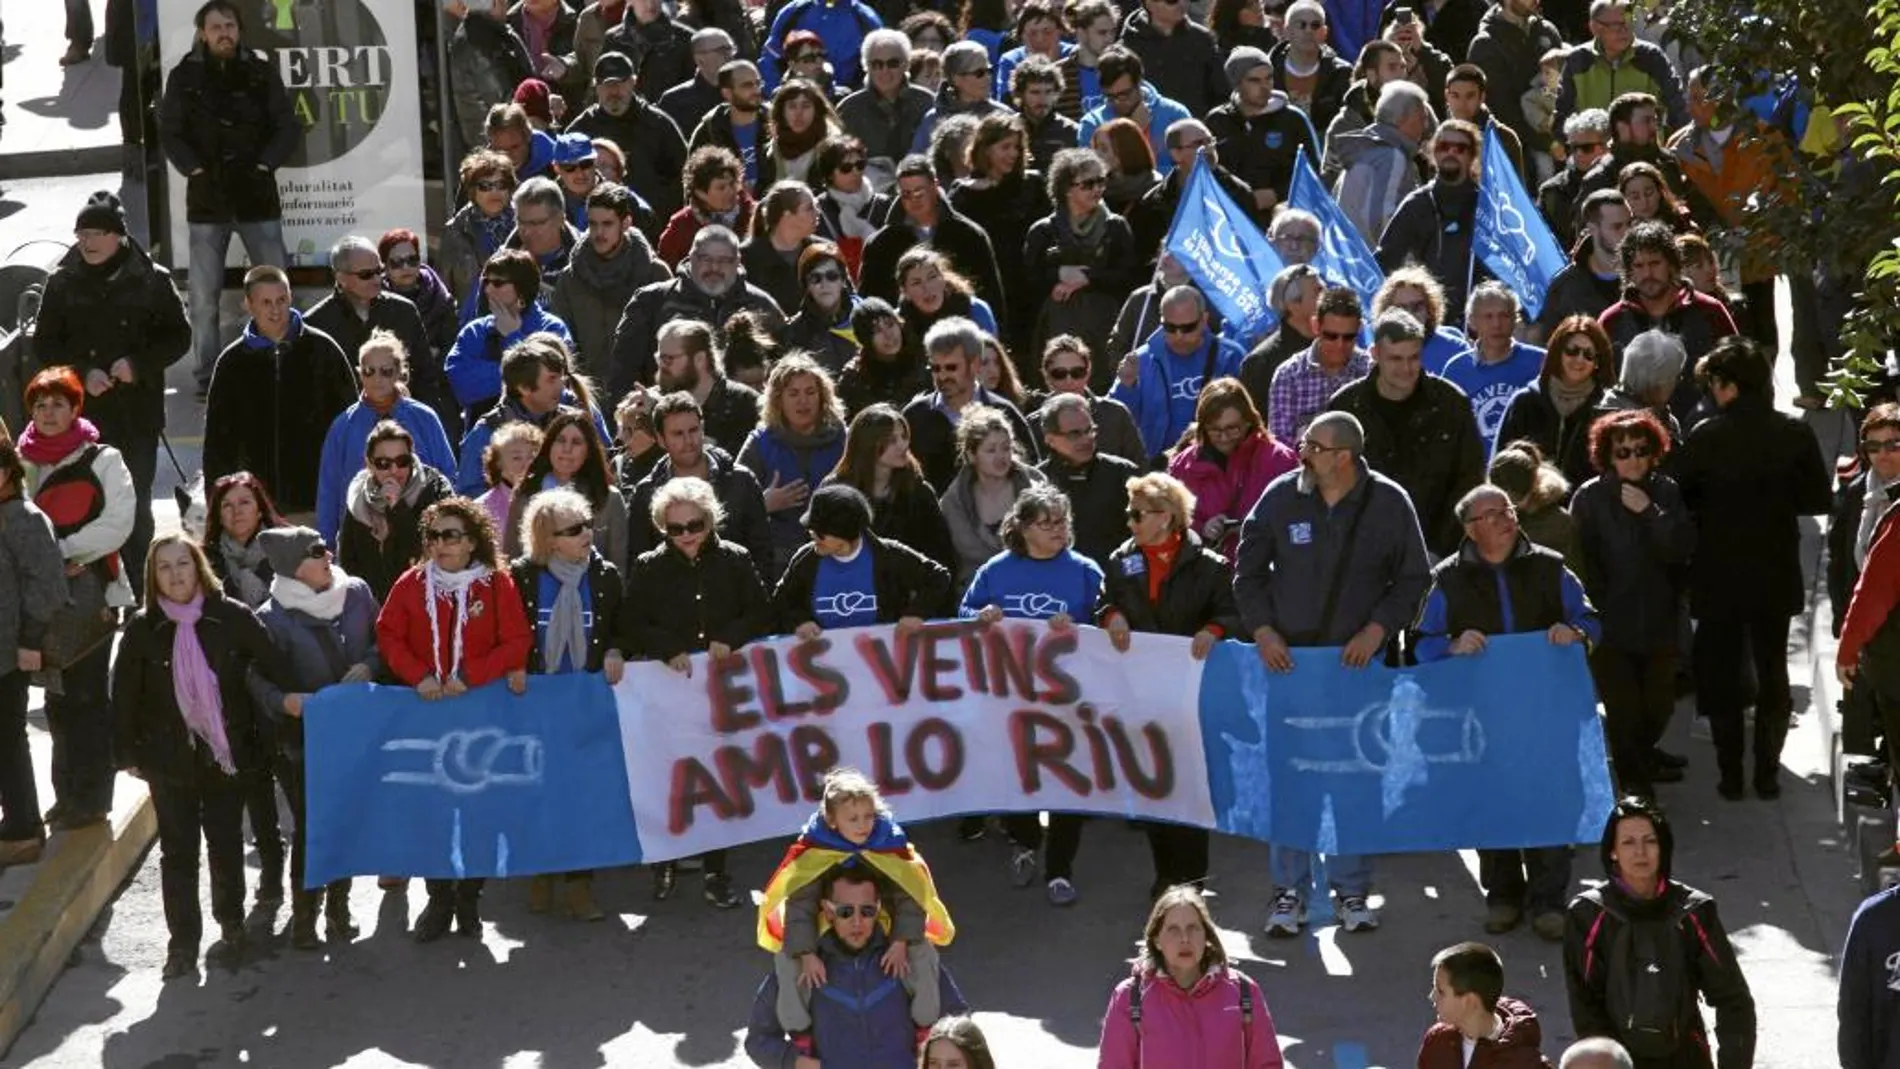 La Plataforma en Defensa del Ebro convocó ayer una manifestación en contra del trasvase aprobado porRajoy